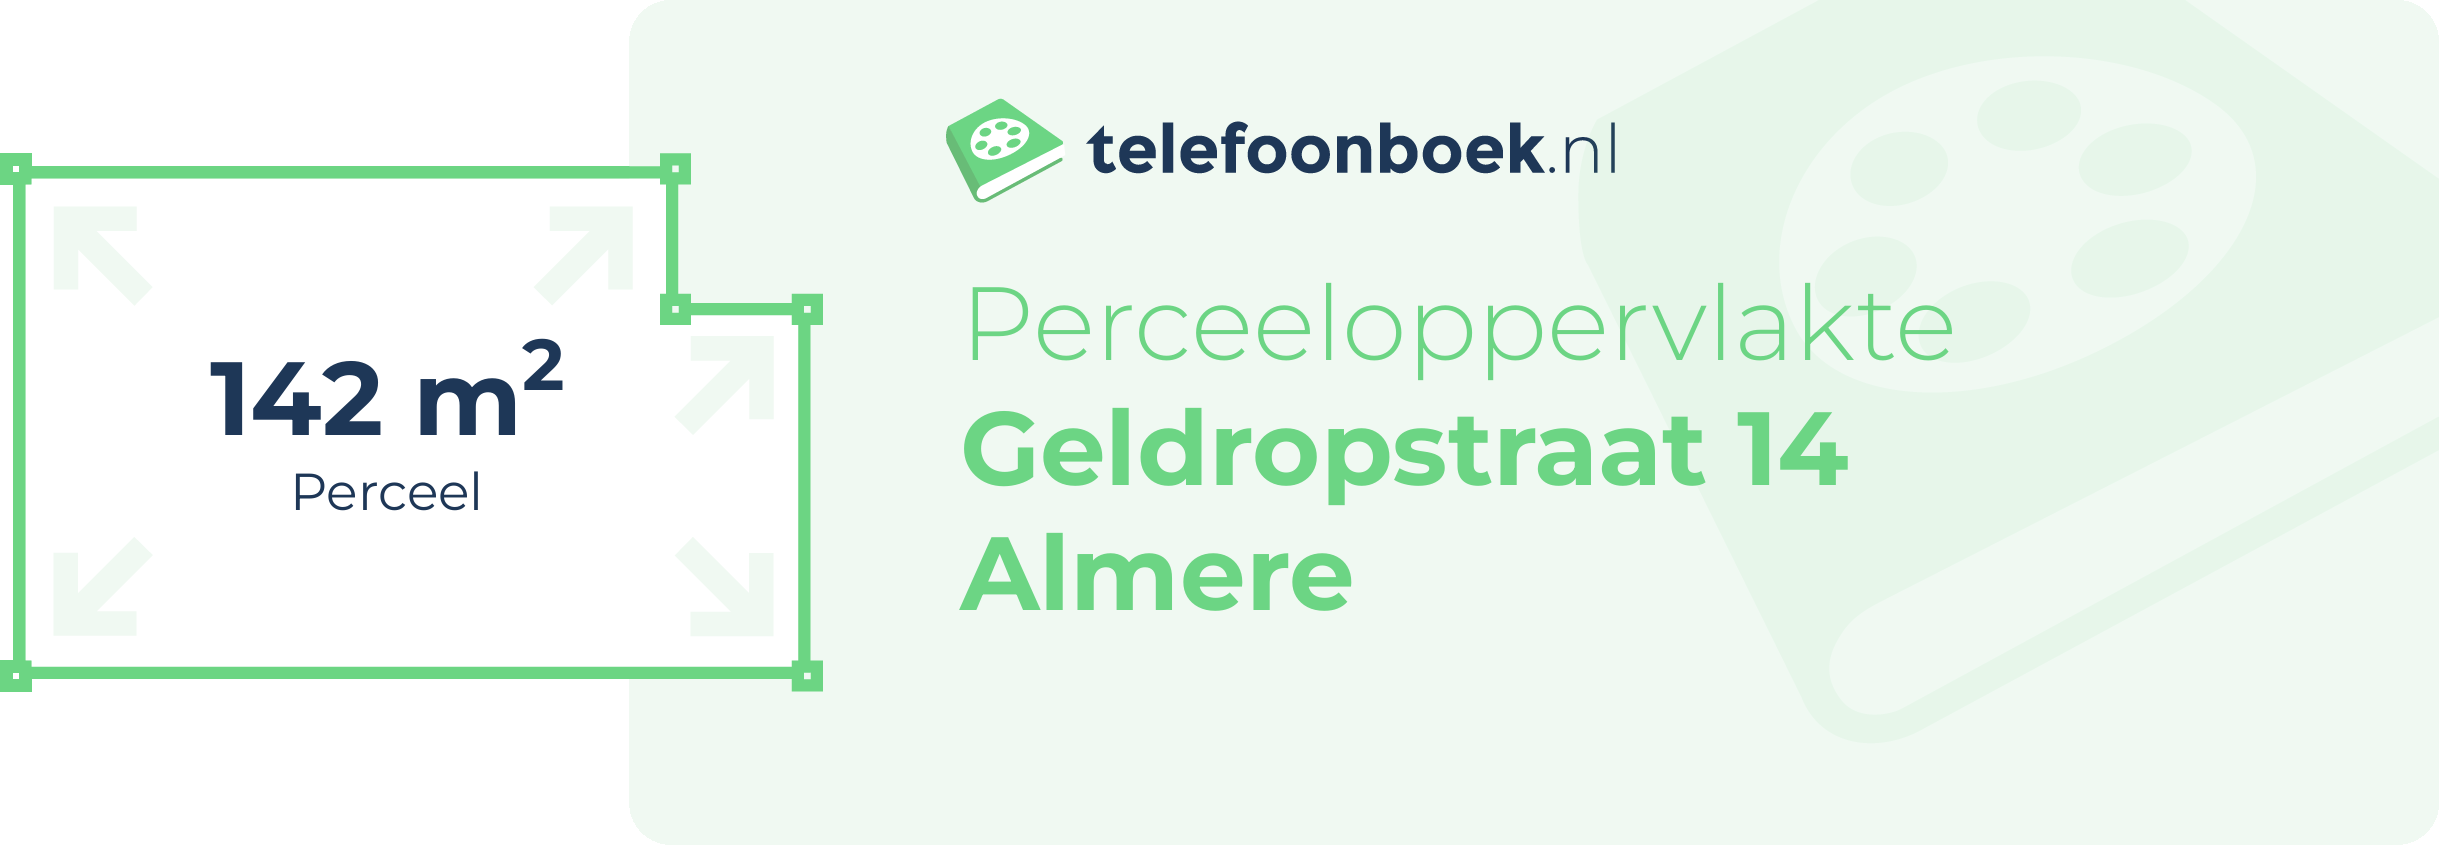 Perceeloppervlakte Geldropstraat 14 Almere